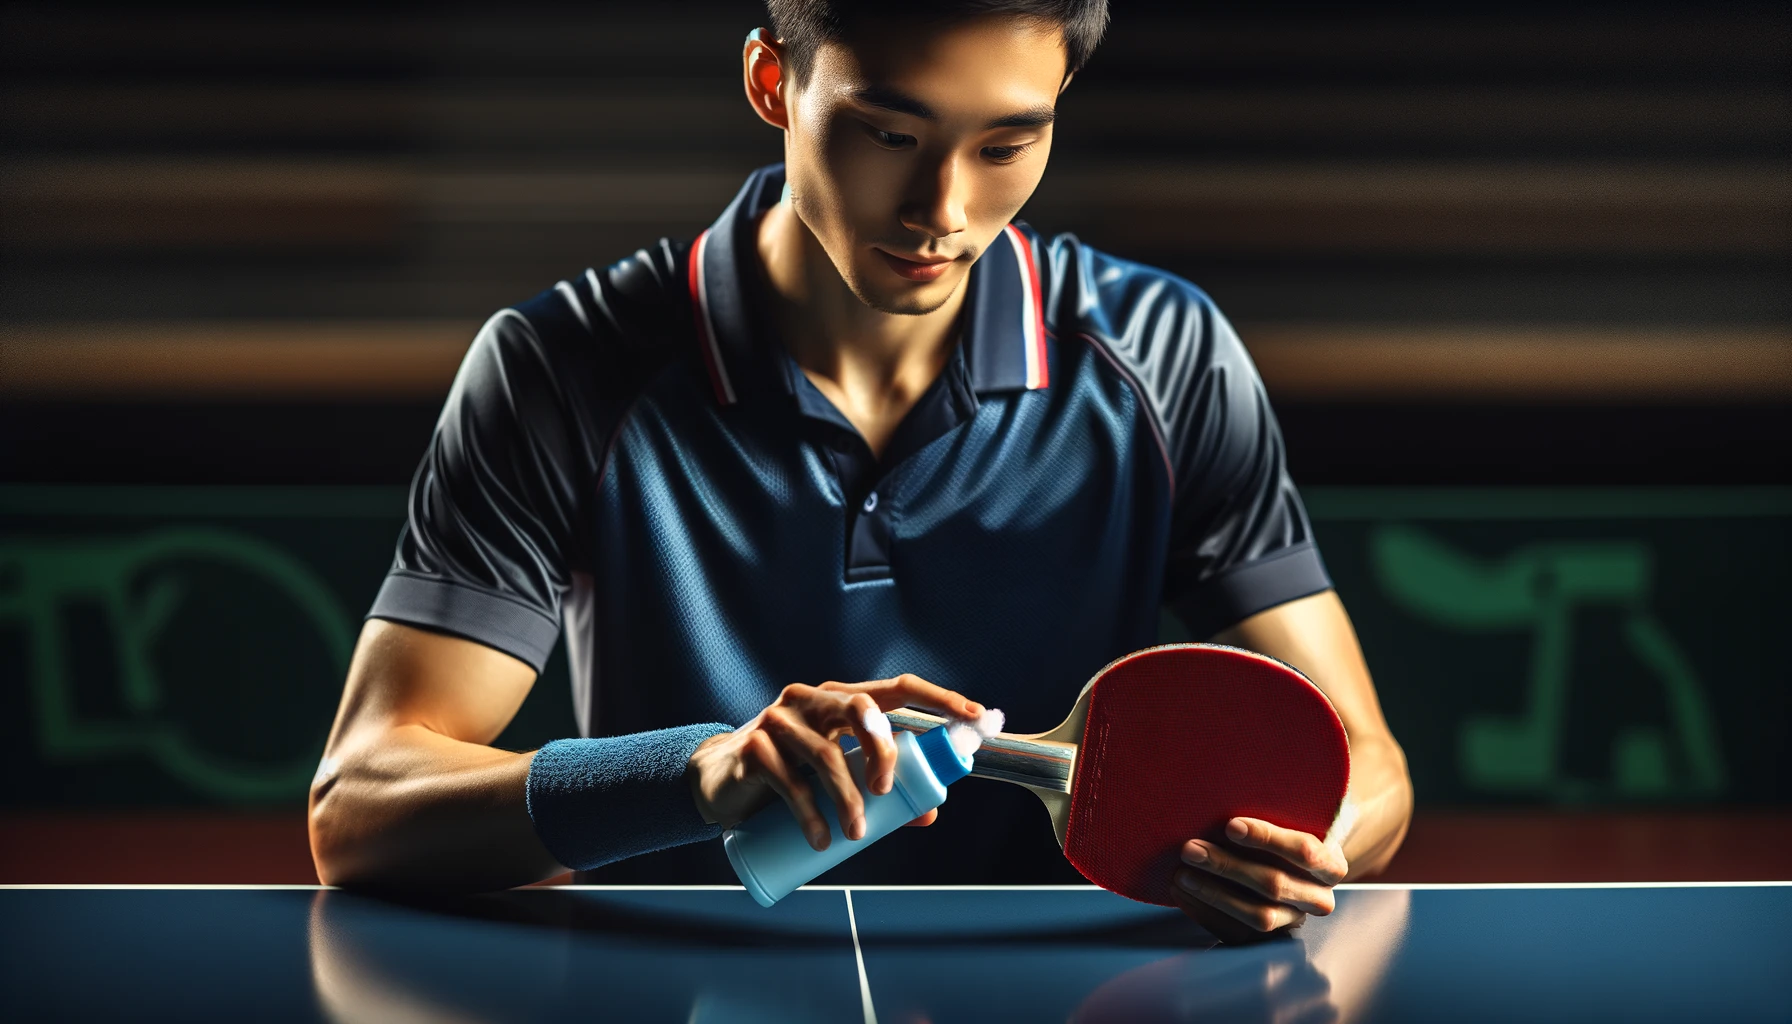 Foto eines professionellen Tischtennisspielers in einer dunkelblauen Sportuniform, der einen Tischtennisschläger mit einem speziellen Schaumreiniger reinigt.